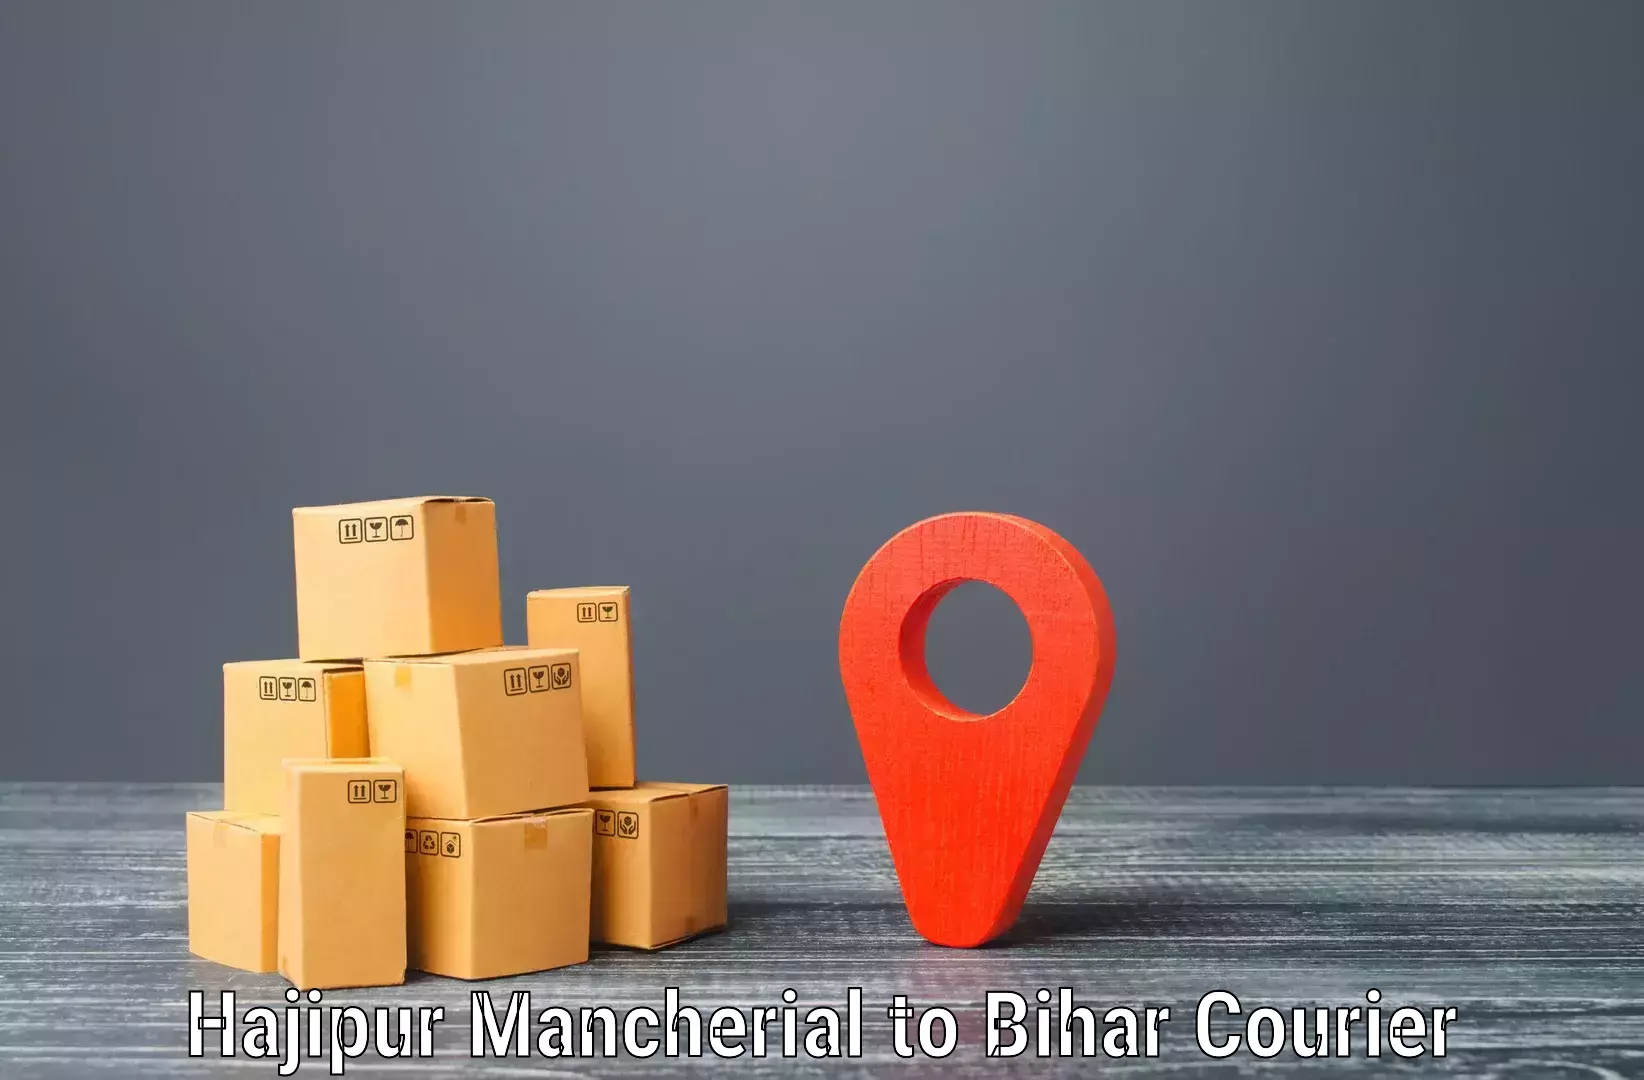 Advanced shipping network Hajipur Mancherial to Bettiah